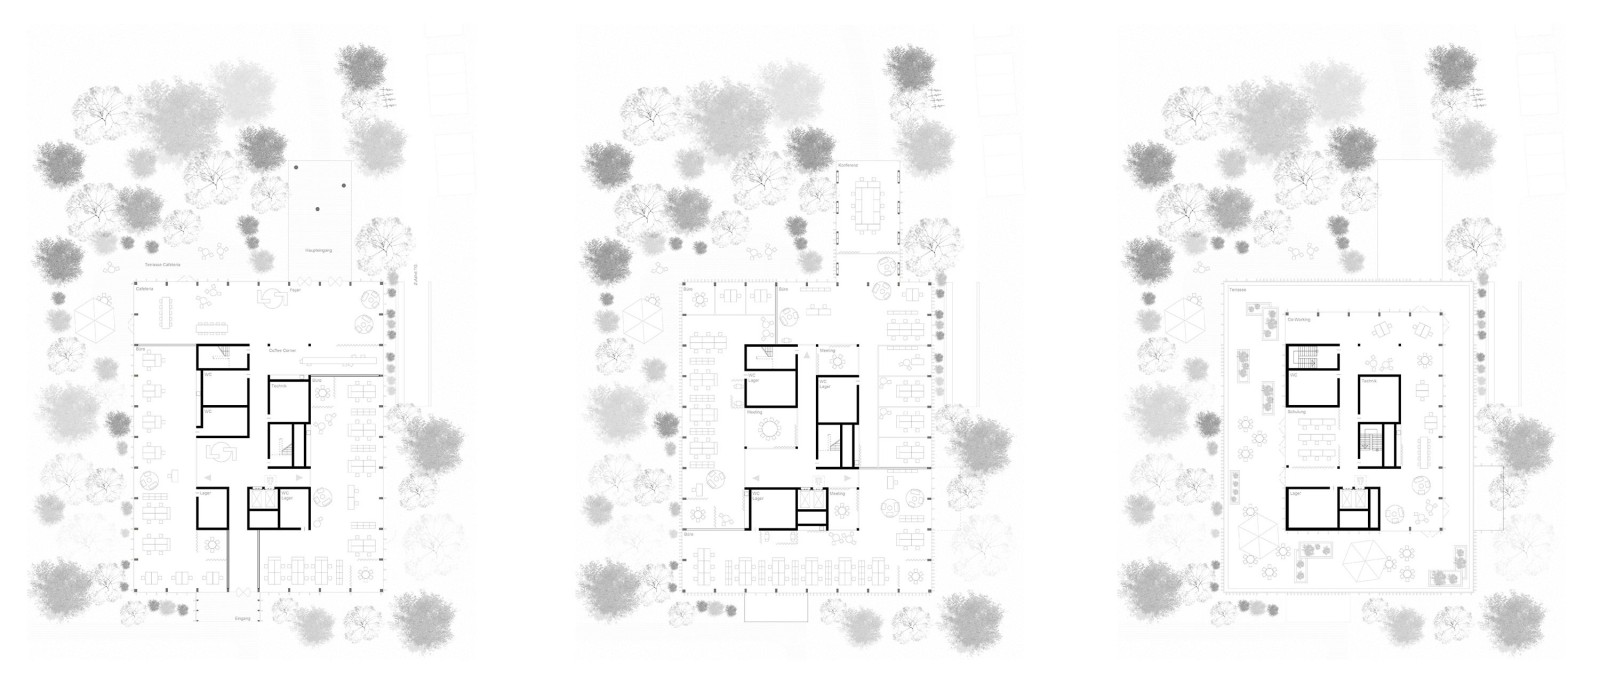 Heidemann Floorplans by OSA Ochs Schmidhuber Architekten